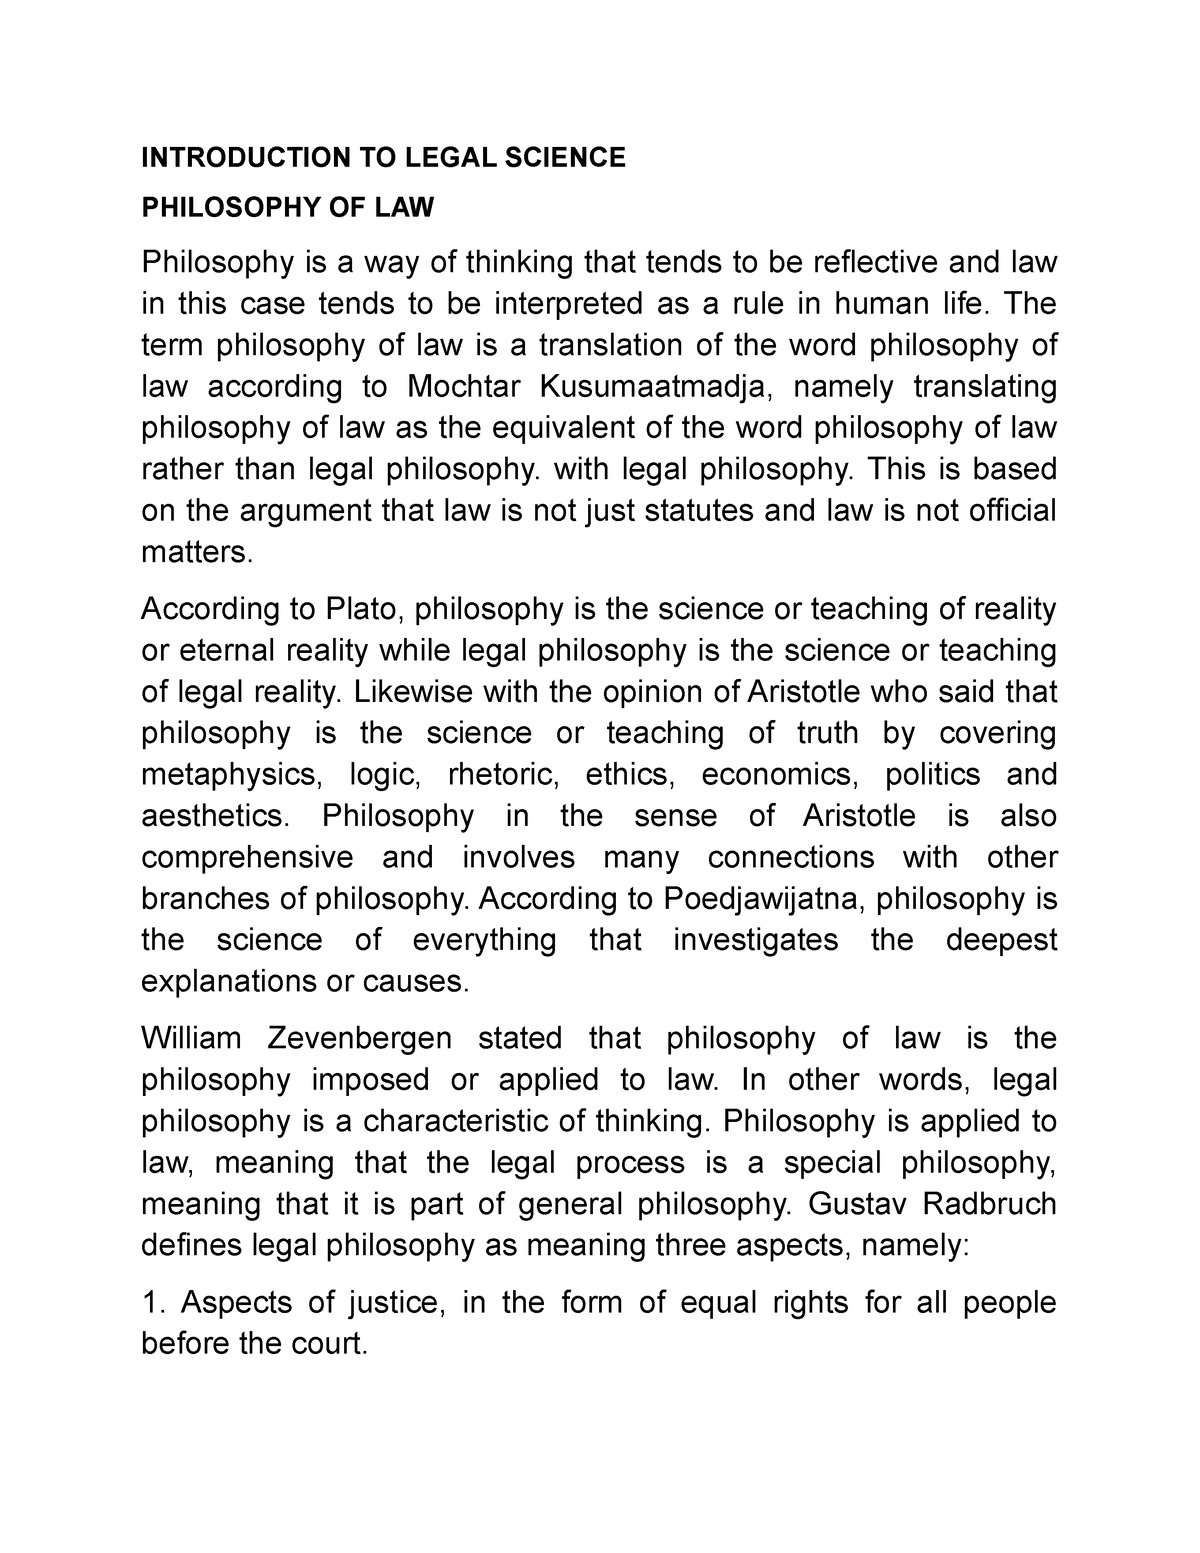 phd in legal philosophy